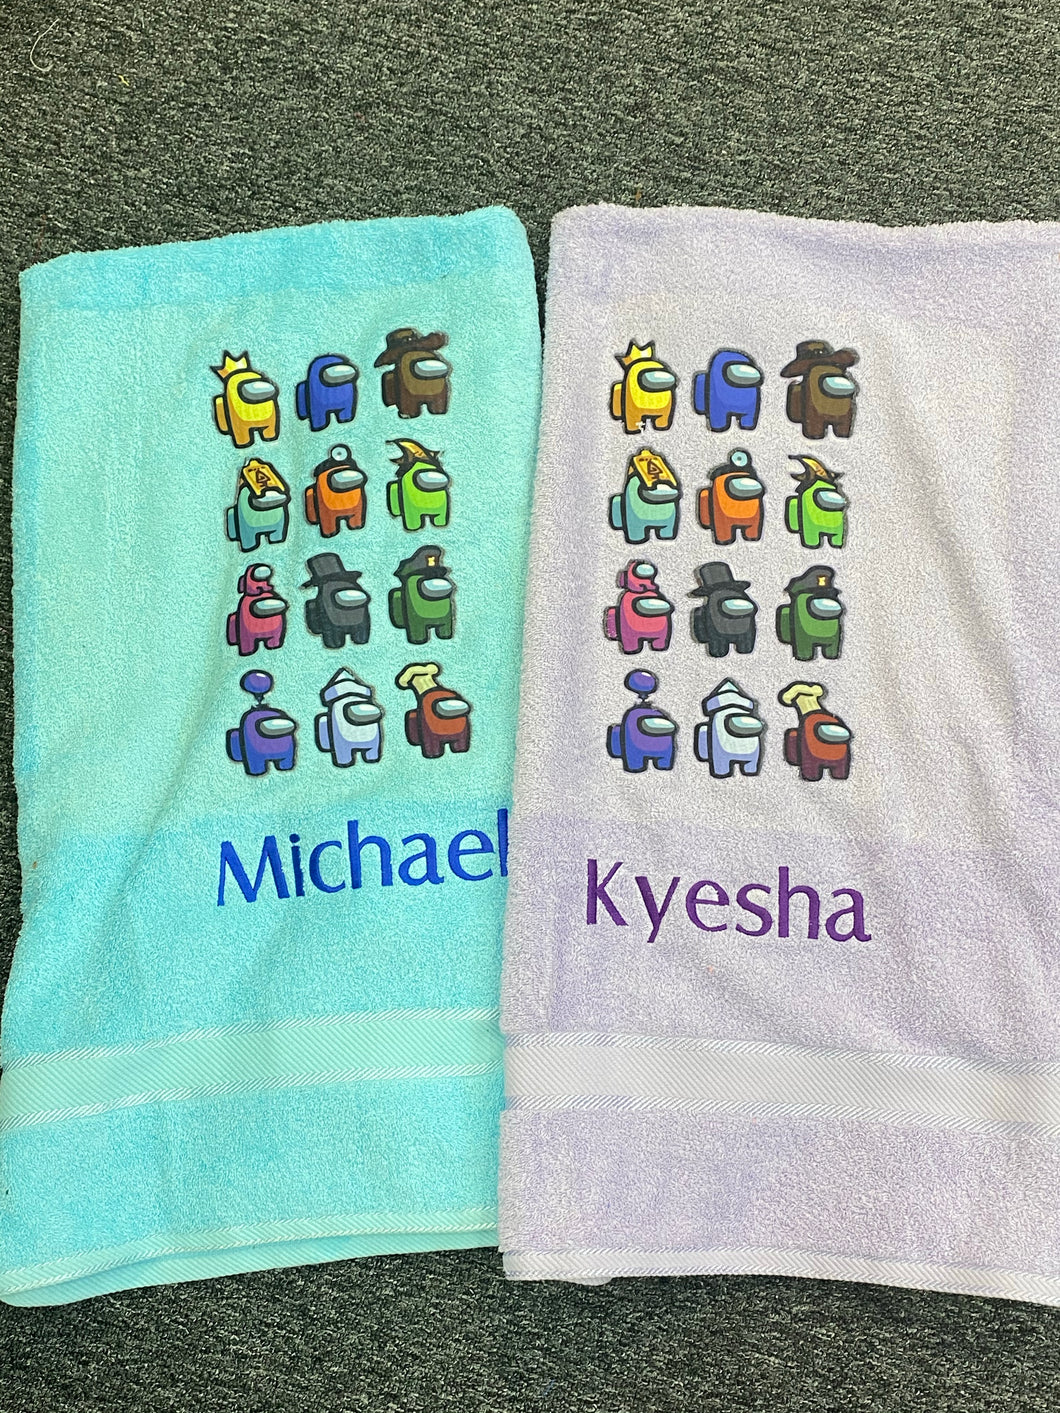 Among us towel/ towel set